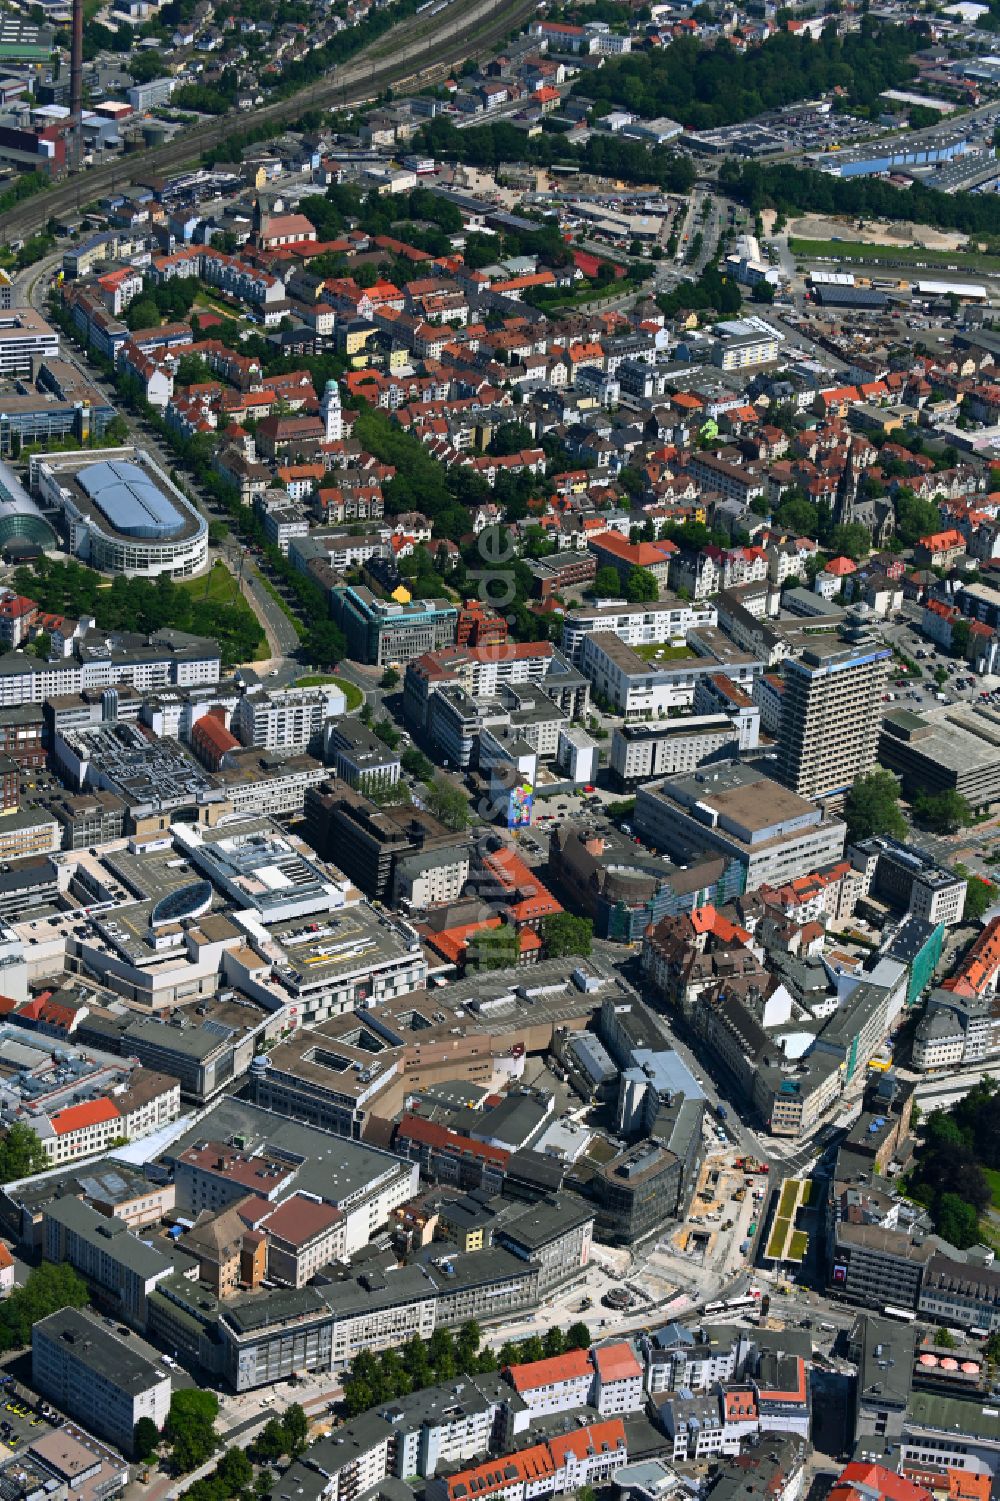 Luftbild Bielefeld - Stadtzentrum im Innenstadtbereich in Bielefeld im Bundesland Nordrhein-Westfalen, Deutschland